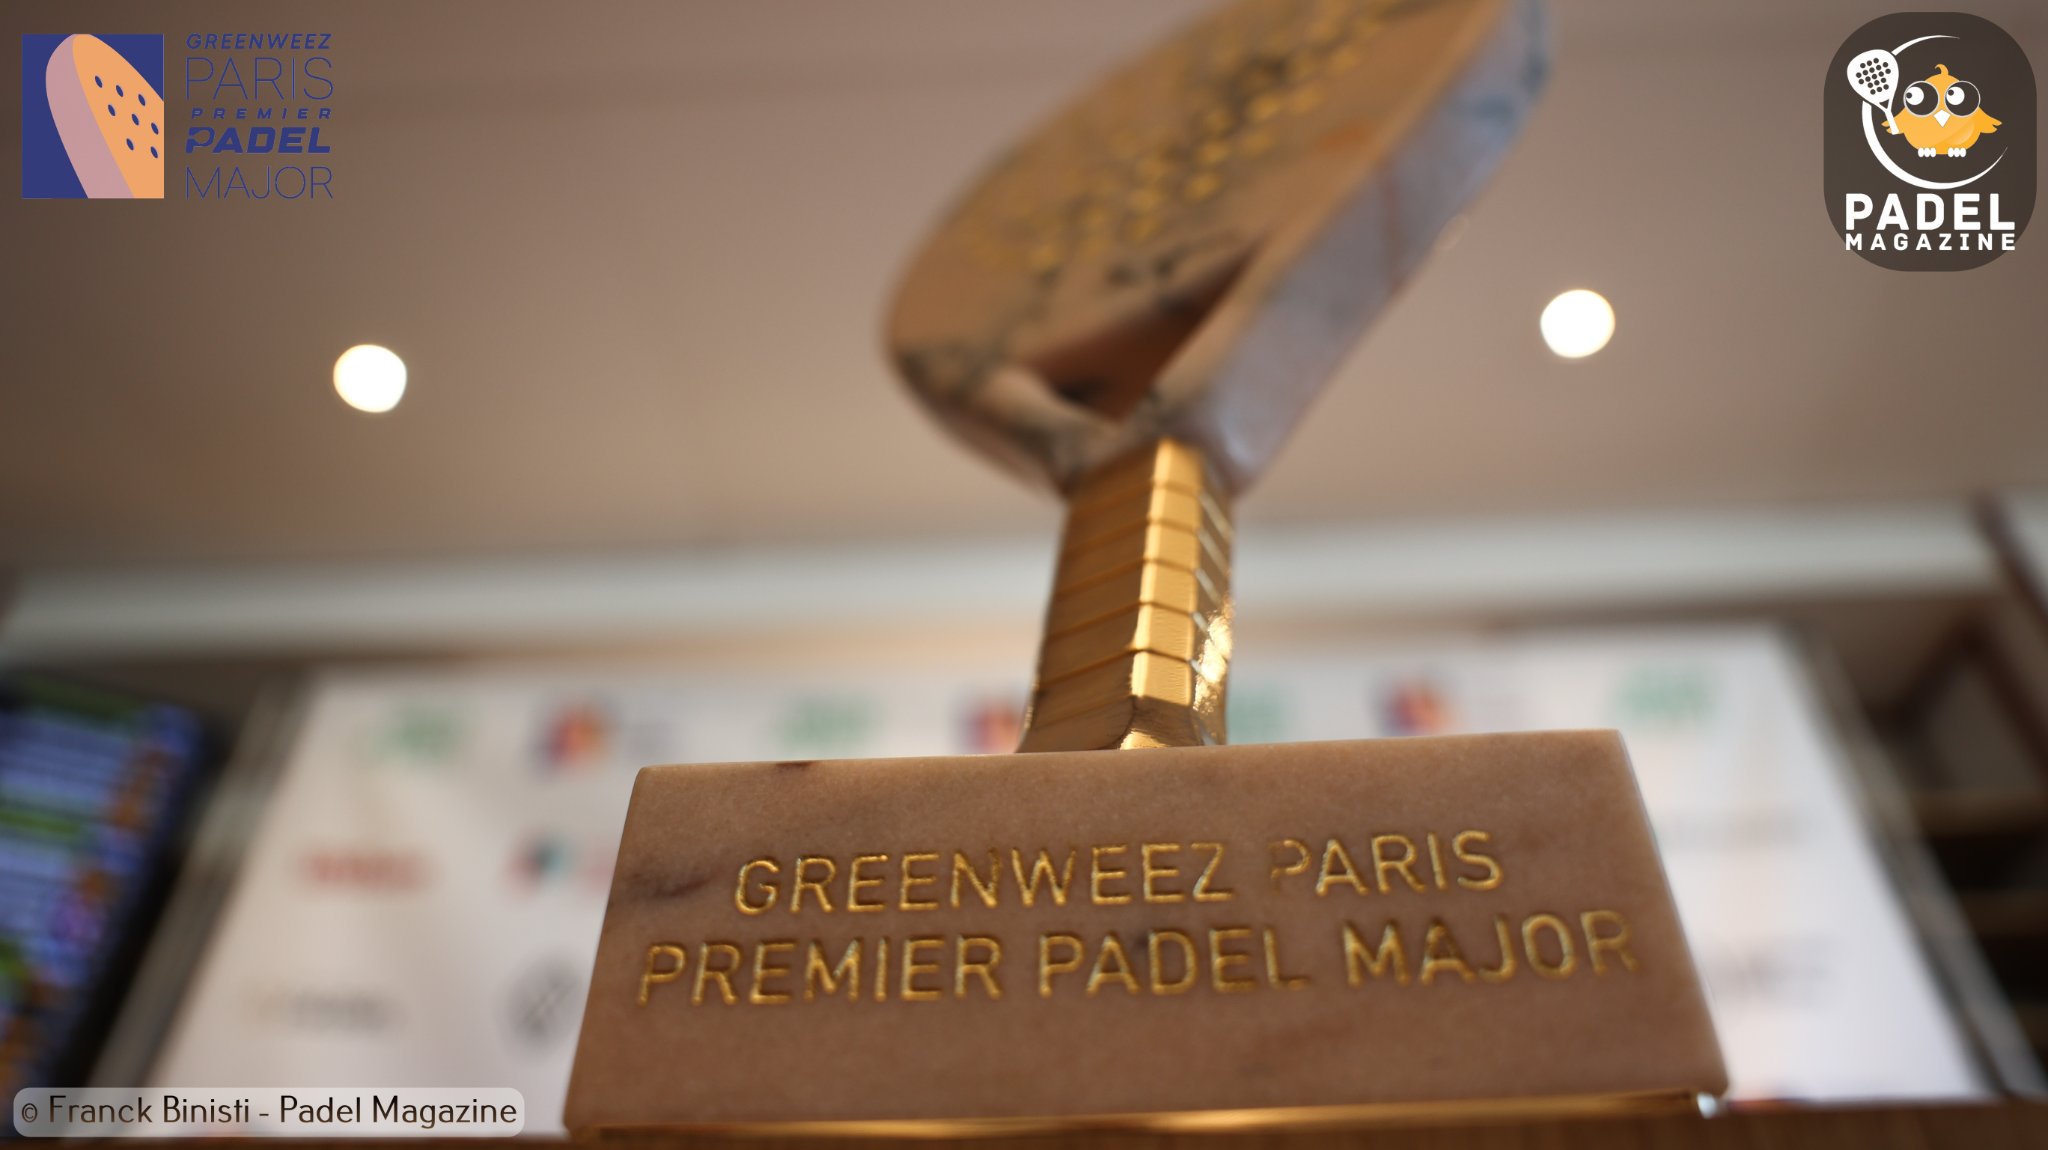 greenweez paris premier padel major 2022 Roland Garros-trofee